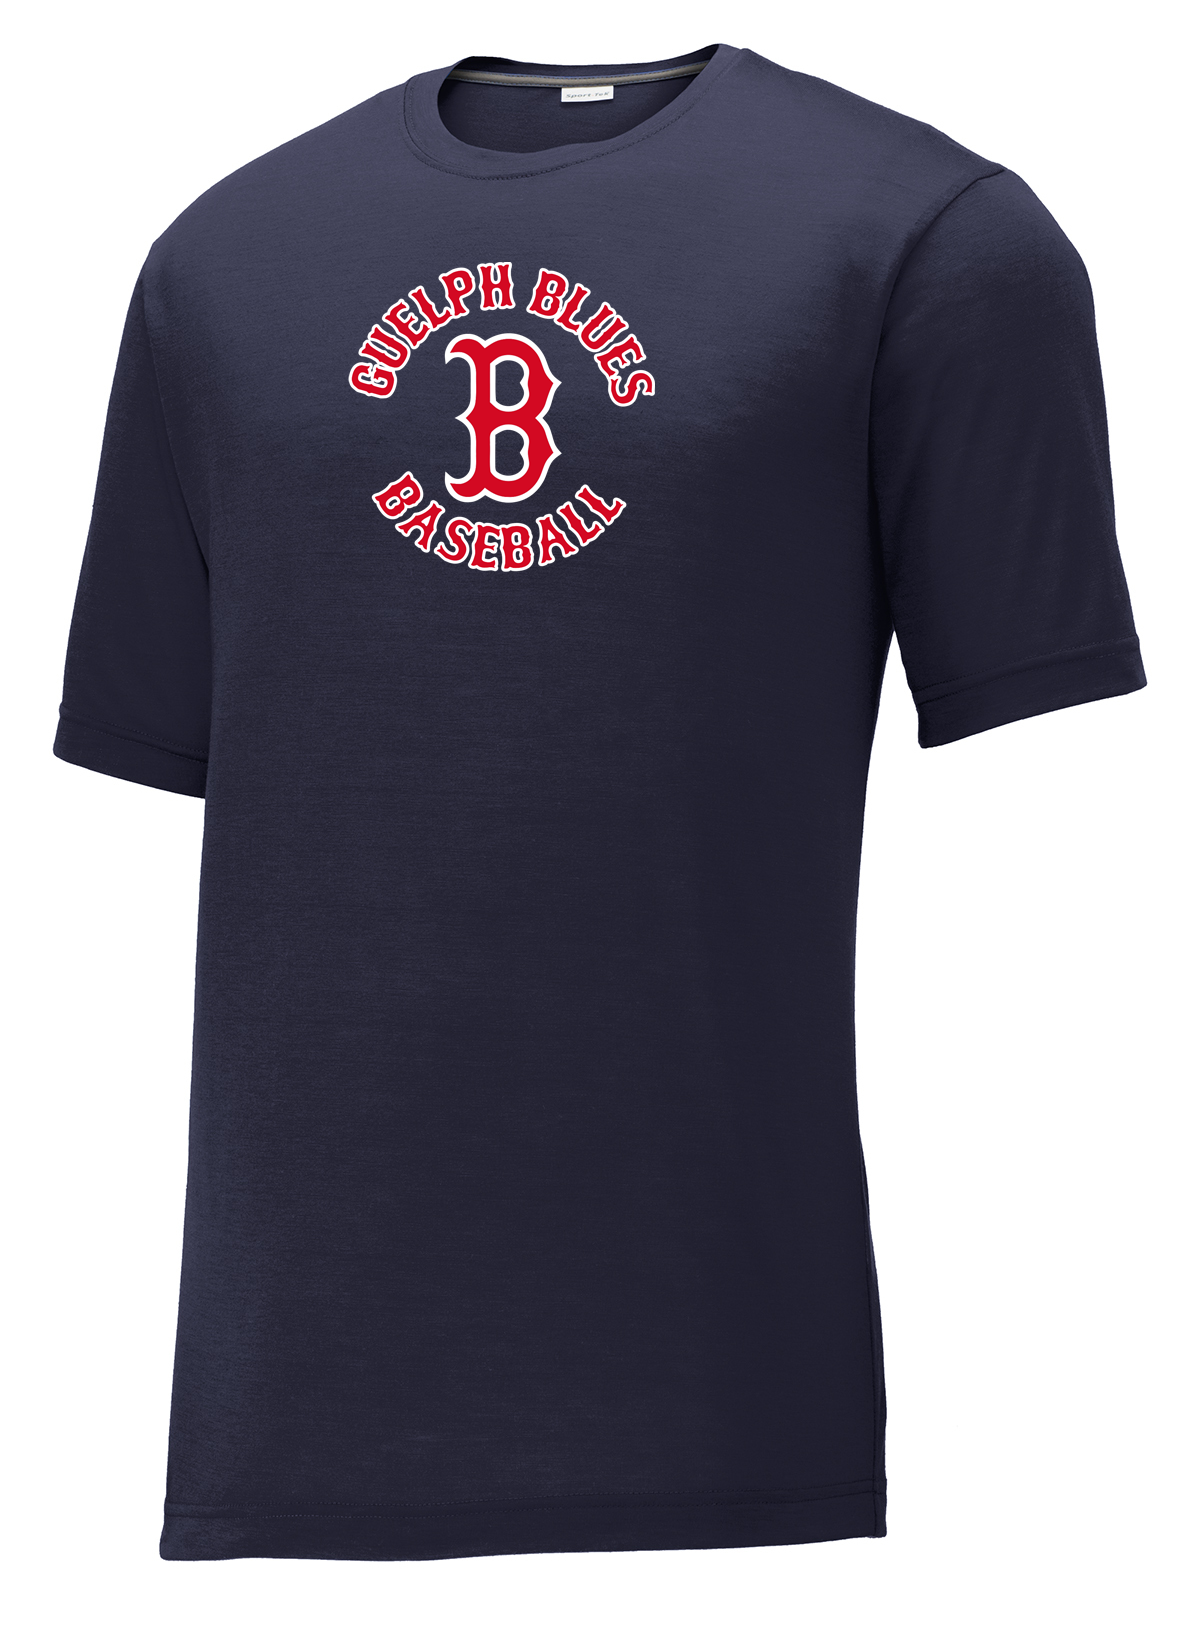 Guelph Blues Baseball  CottonTouch Performance T-Shirt